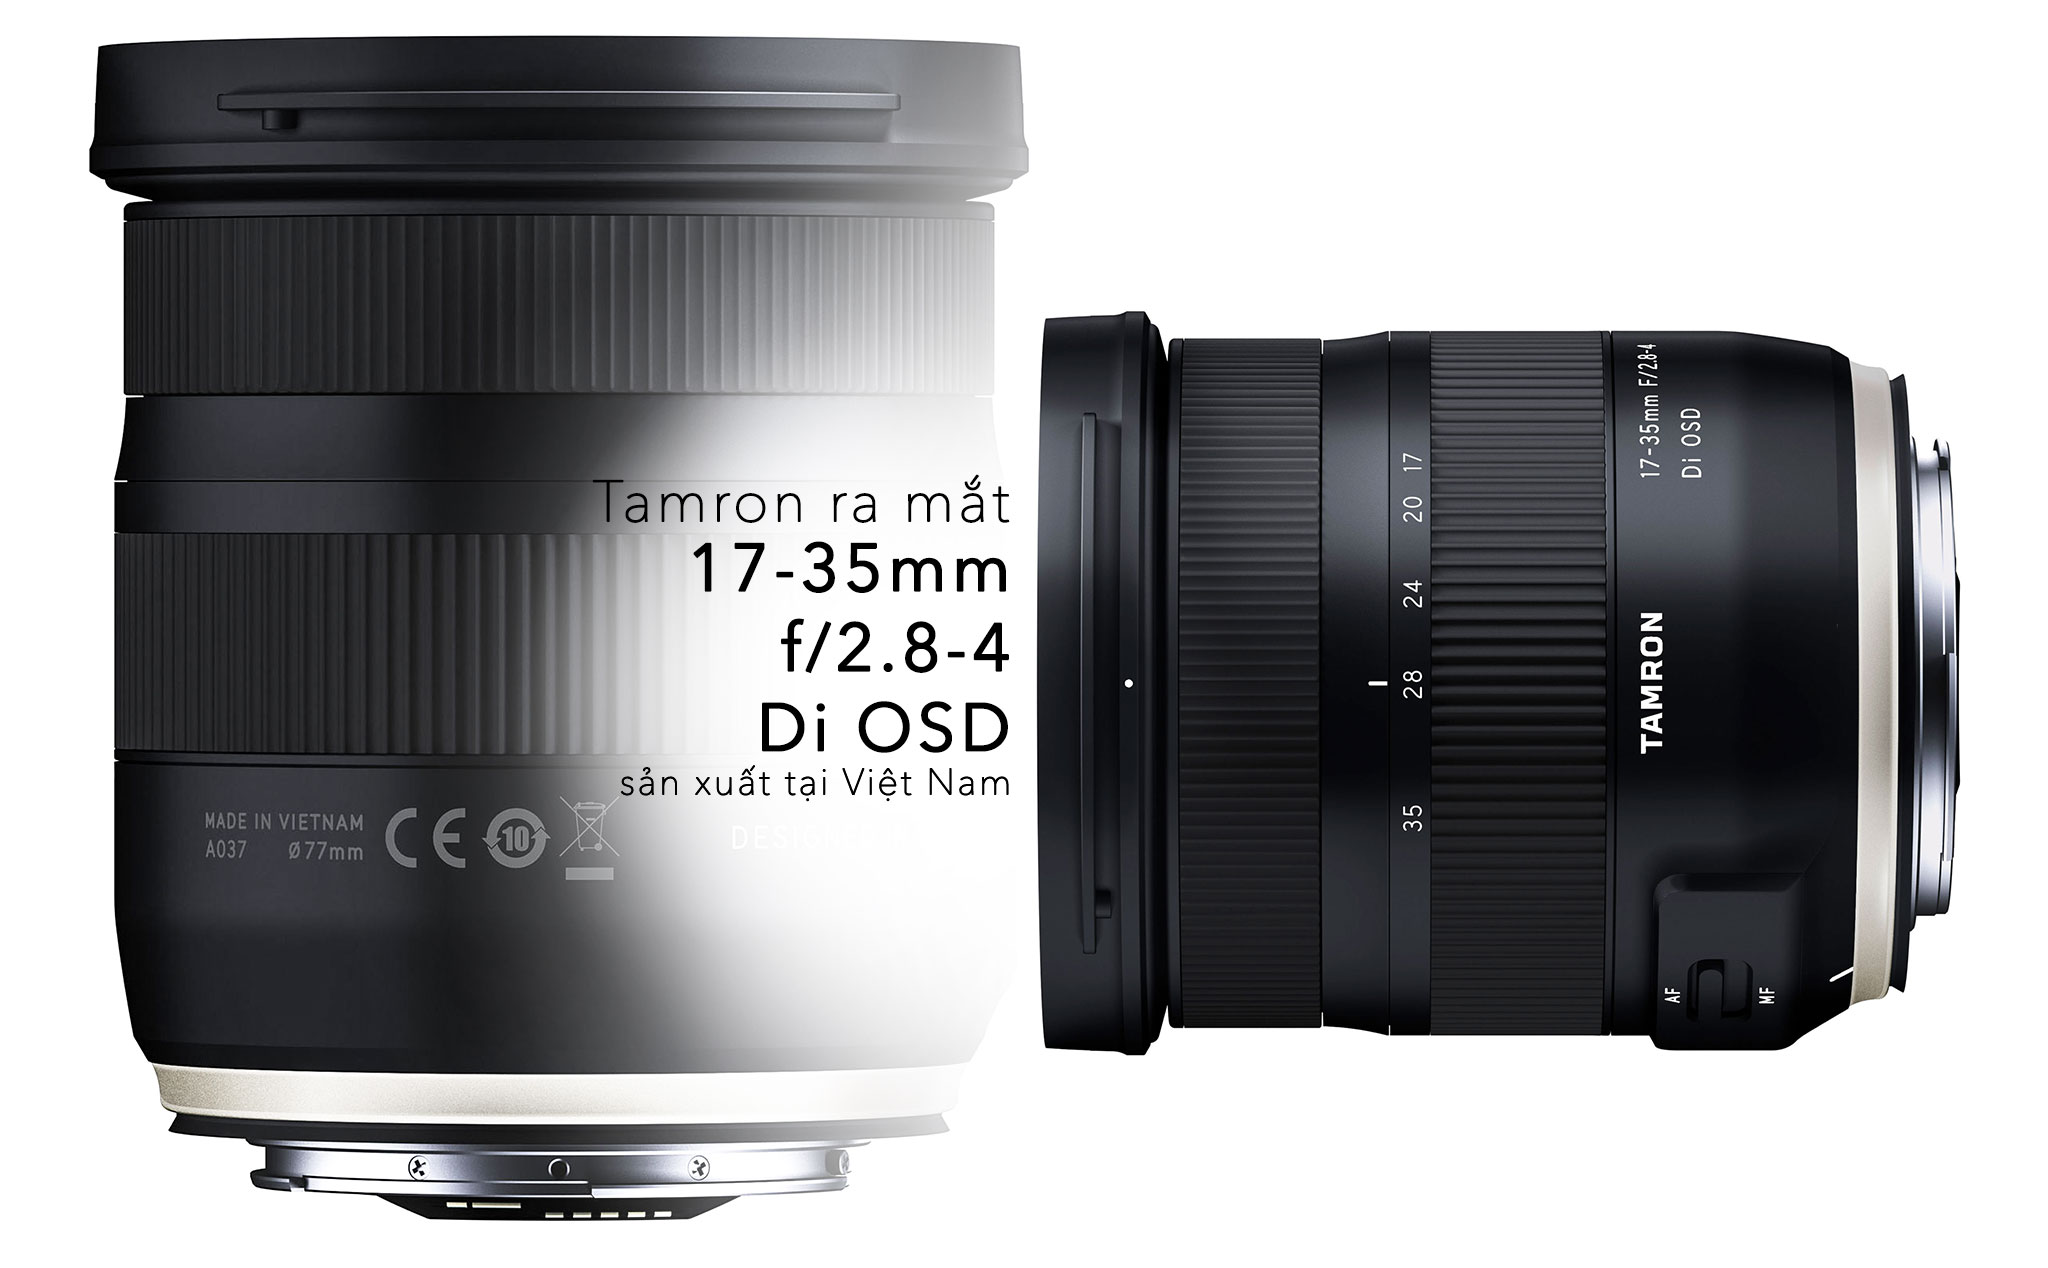 Tamron giới thiệu ống kính Fullframe 17-35mm F2.8-4 Di OSD mới cho Nikon và Canon